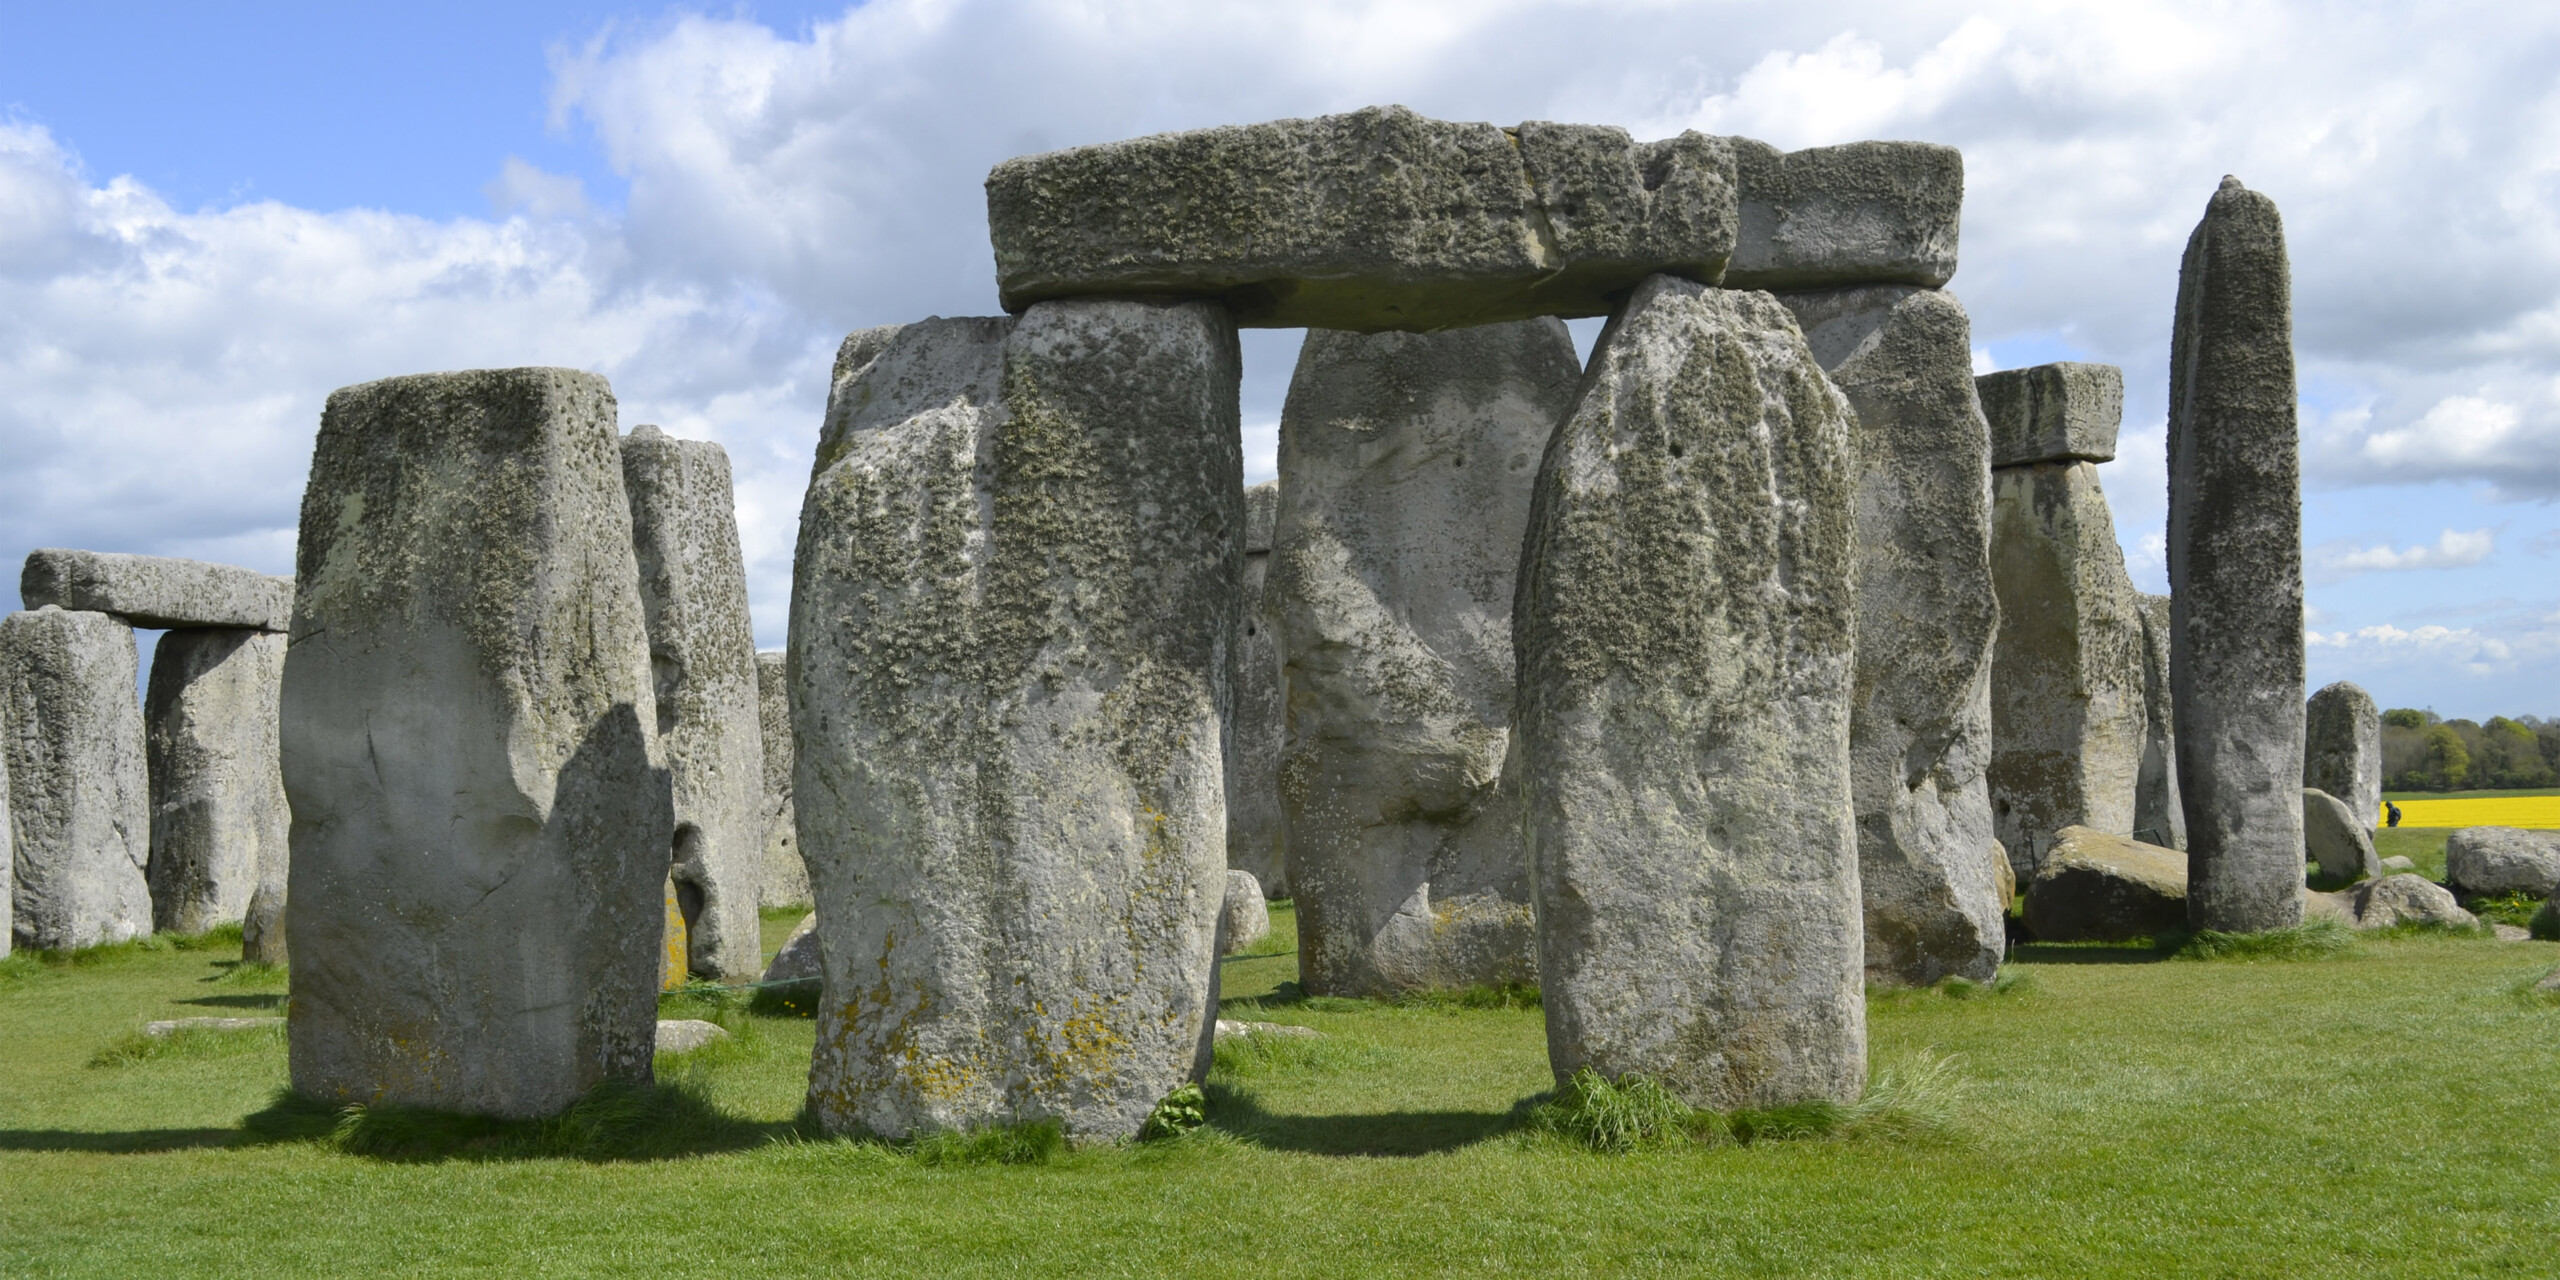 Acredita-se que o Stonehenge funcionava como um calendário solar